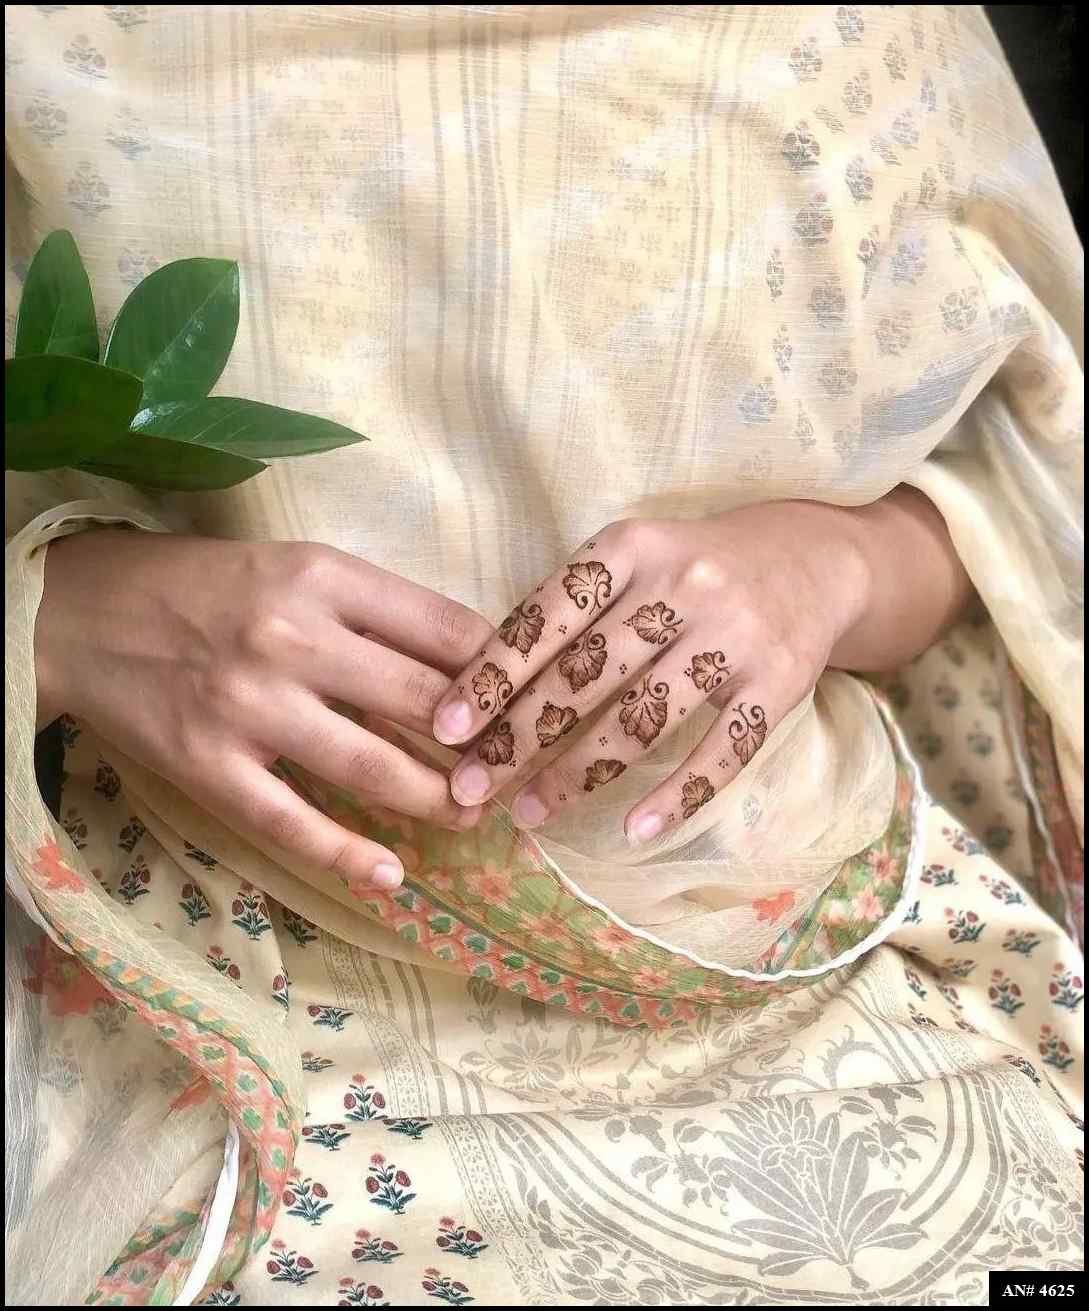 easy-finger-henna